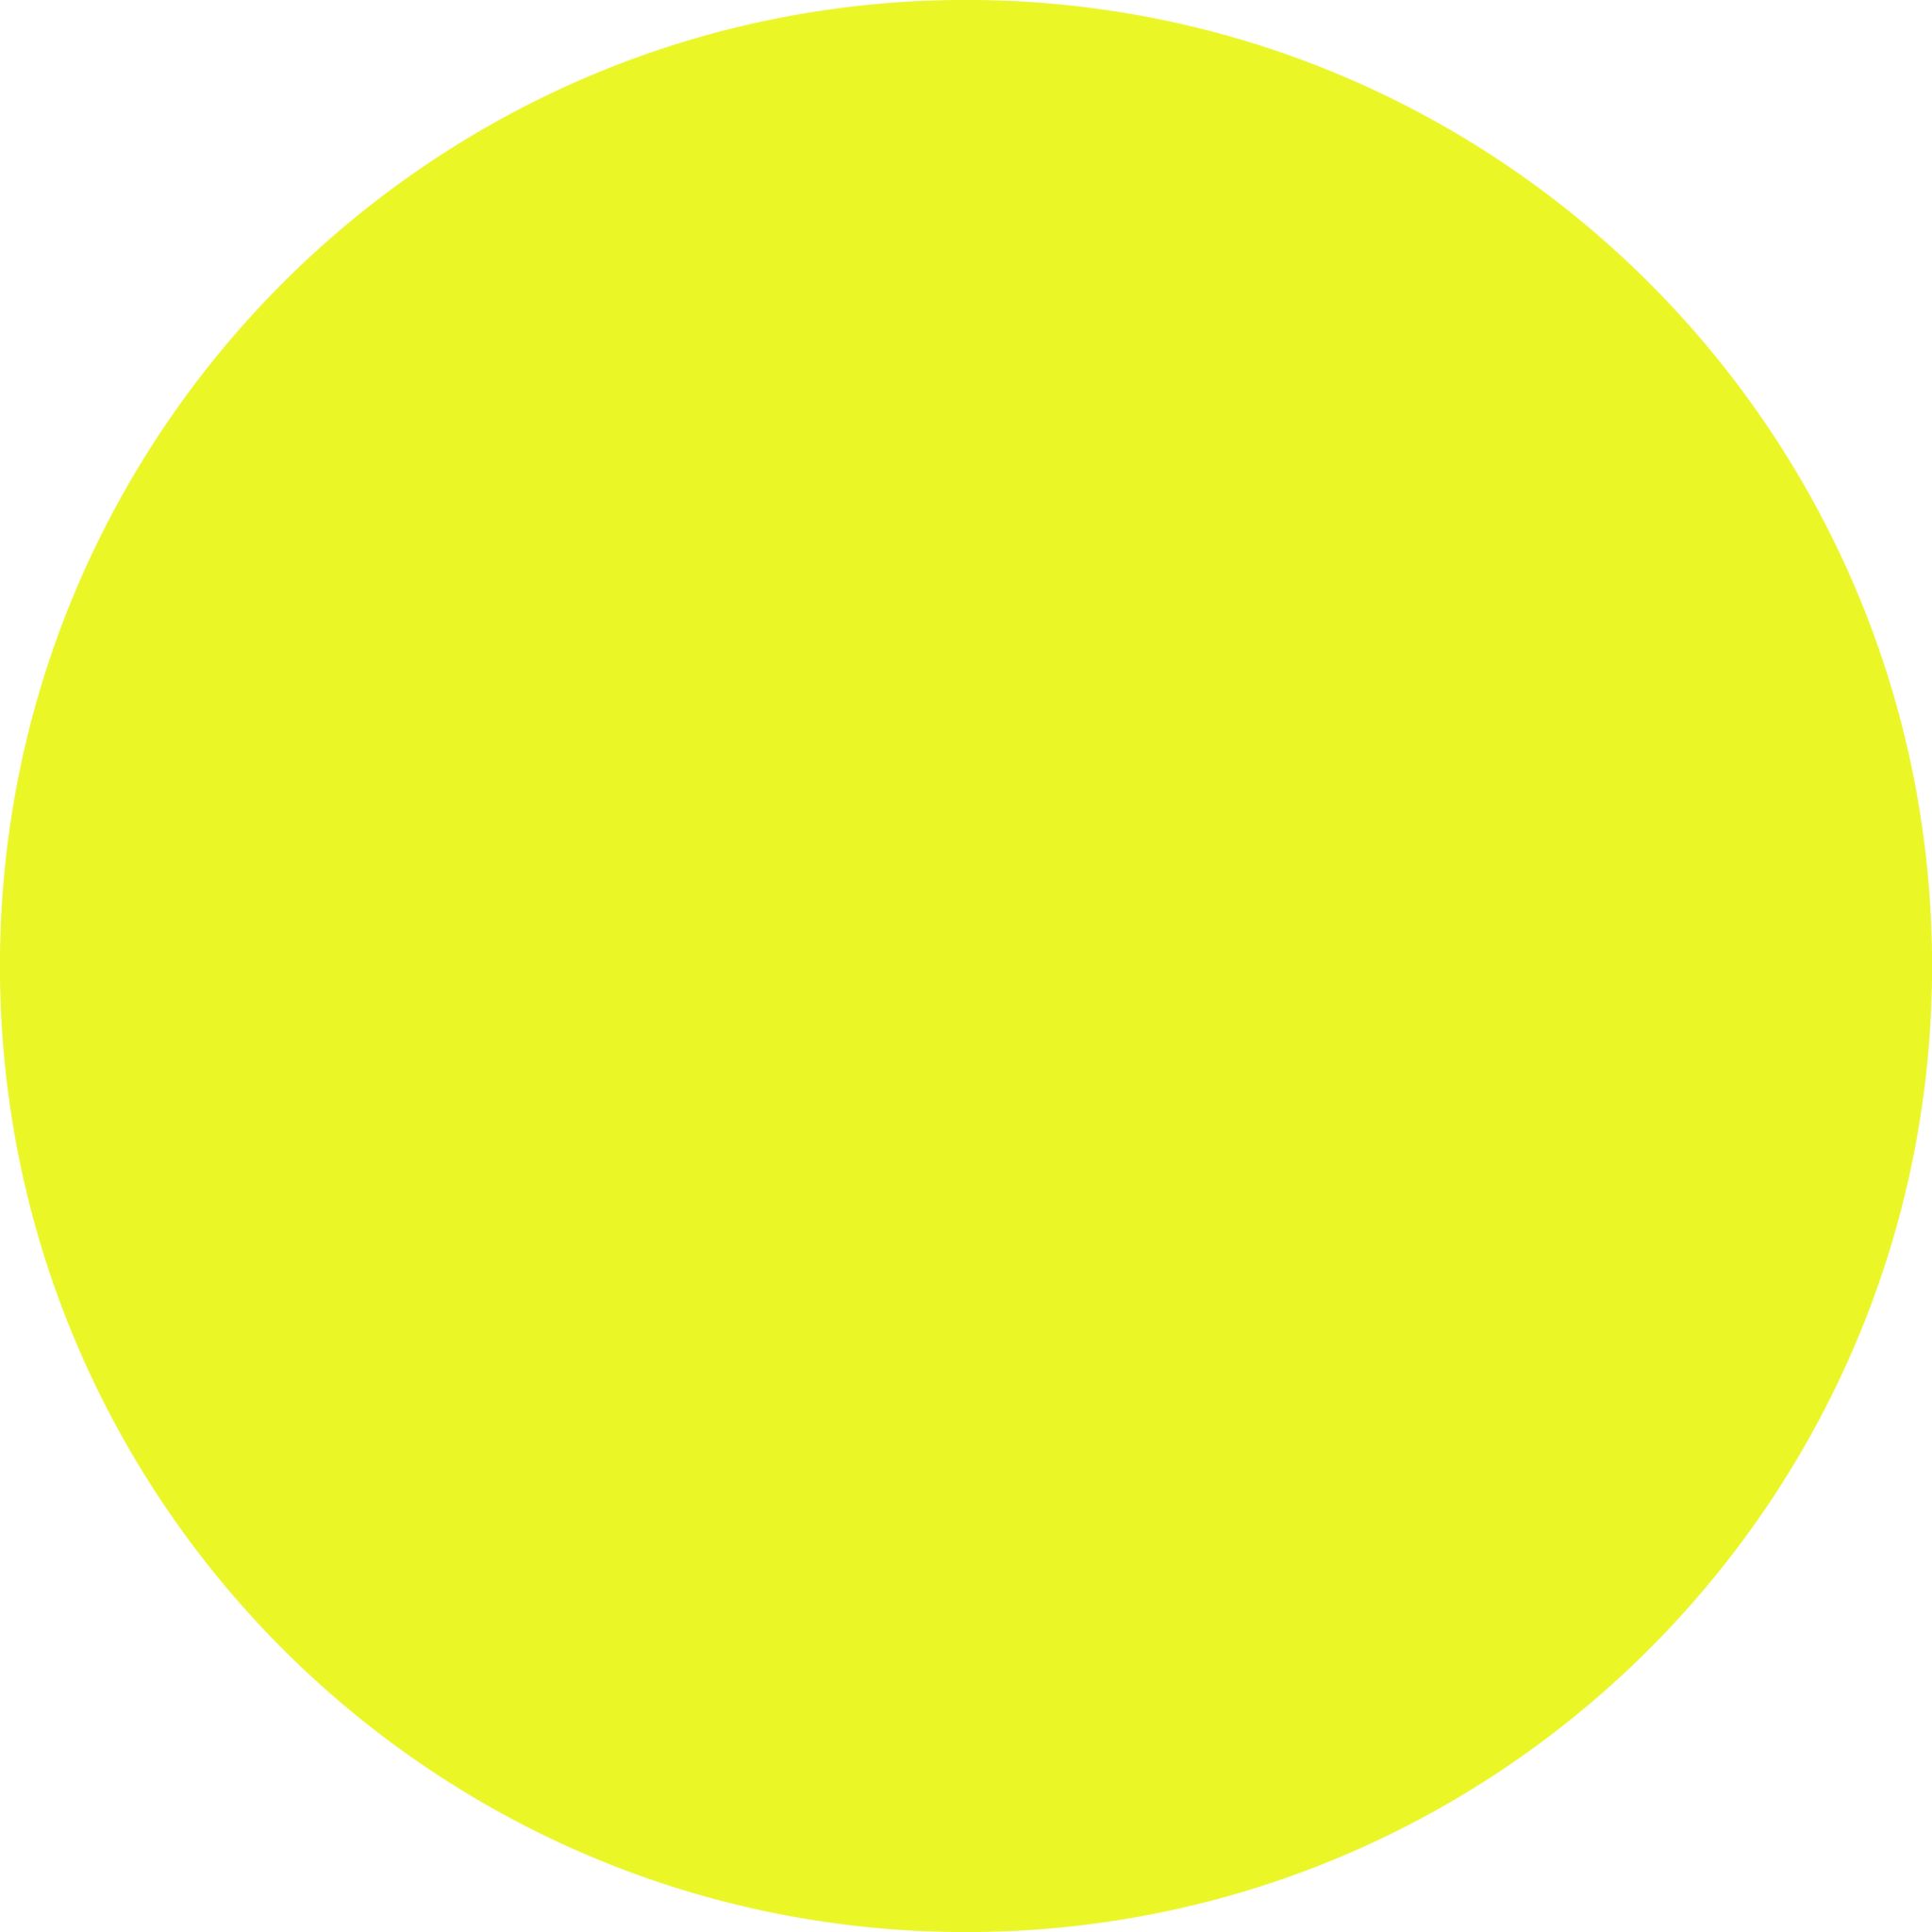 Круг желтый лист. Желтый круг. Желтый кружок. Желтые кружочки. Желтый круг для слабовидящих.